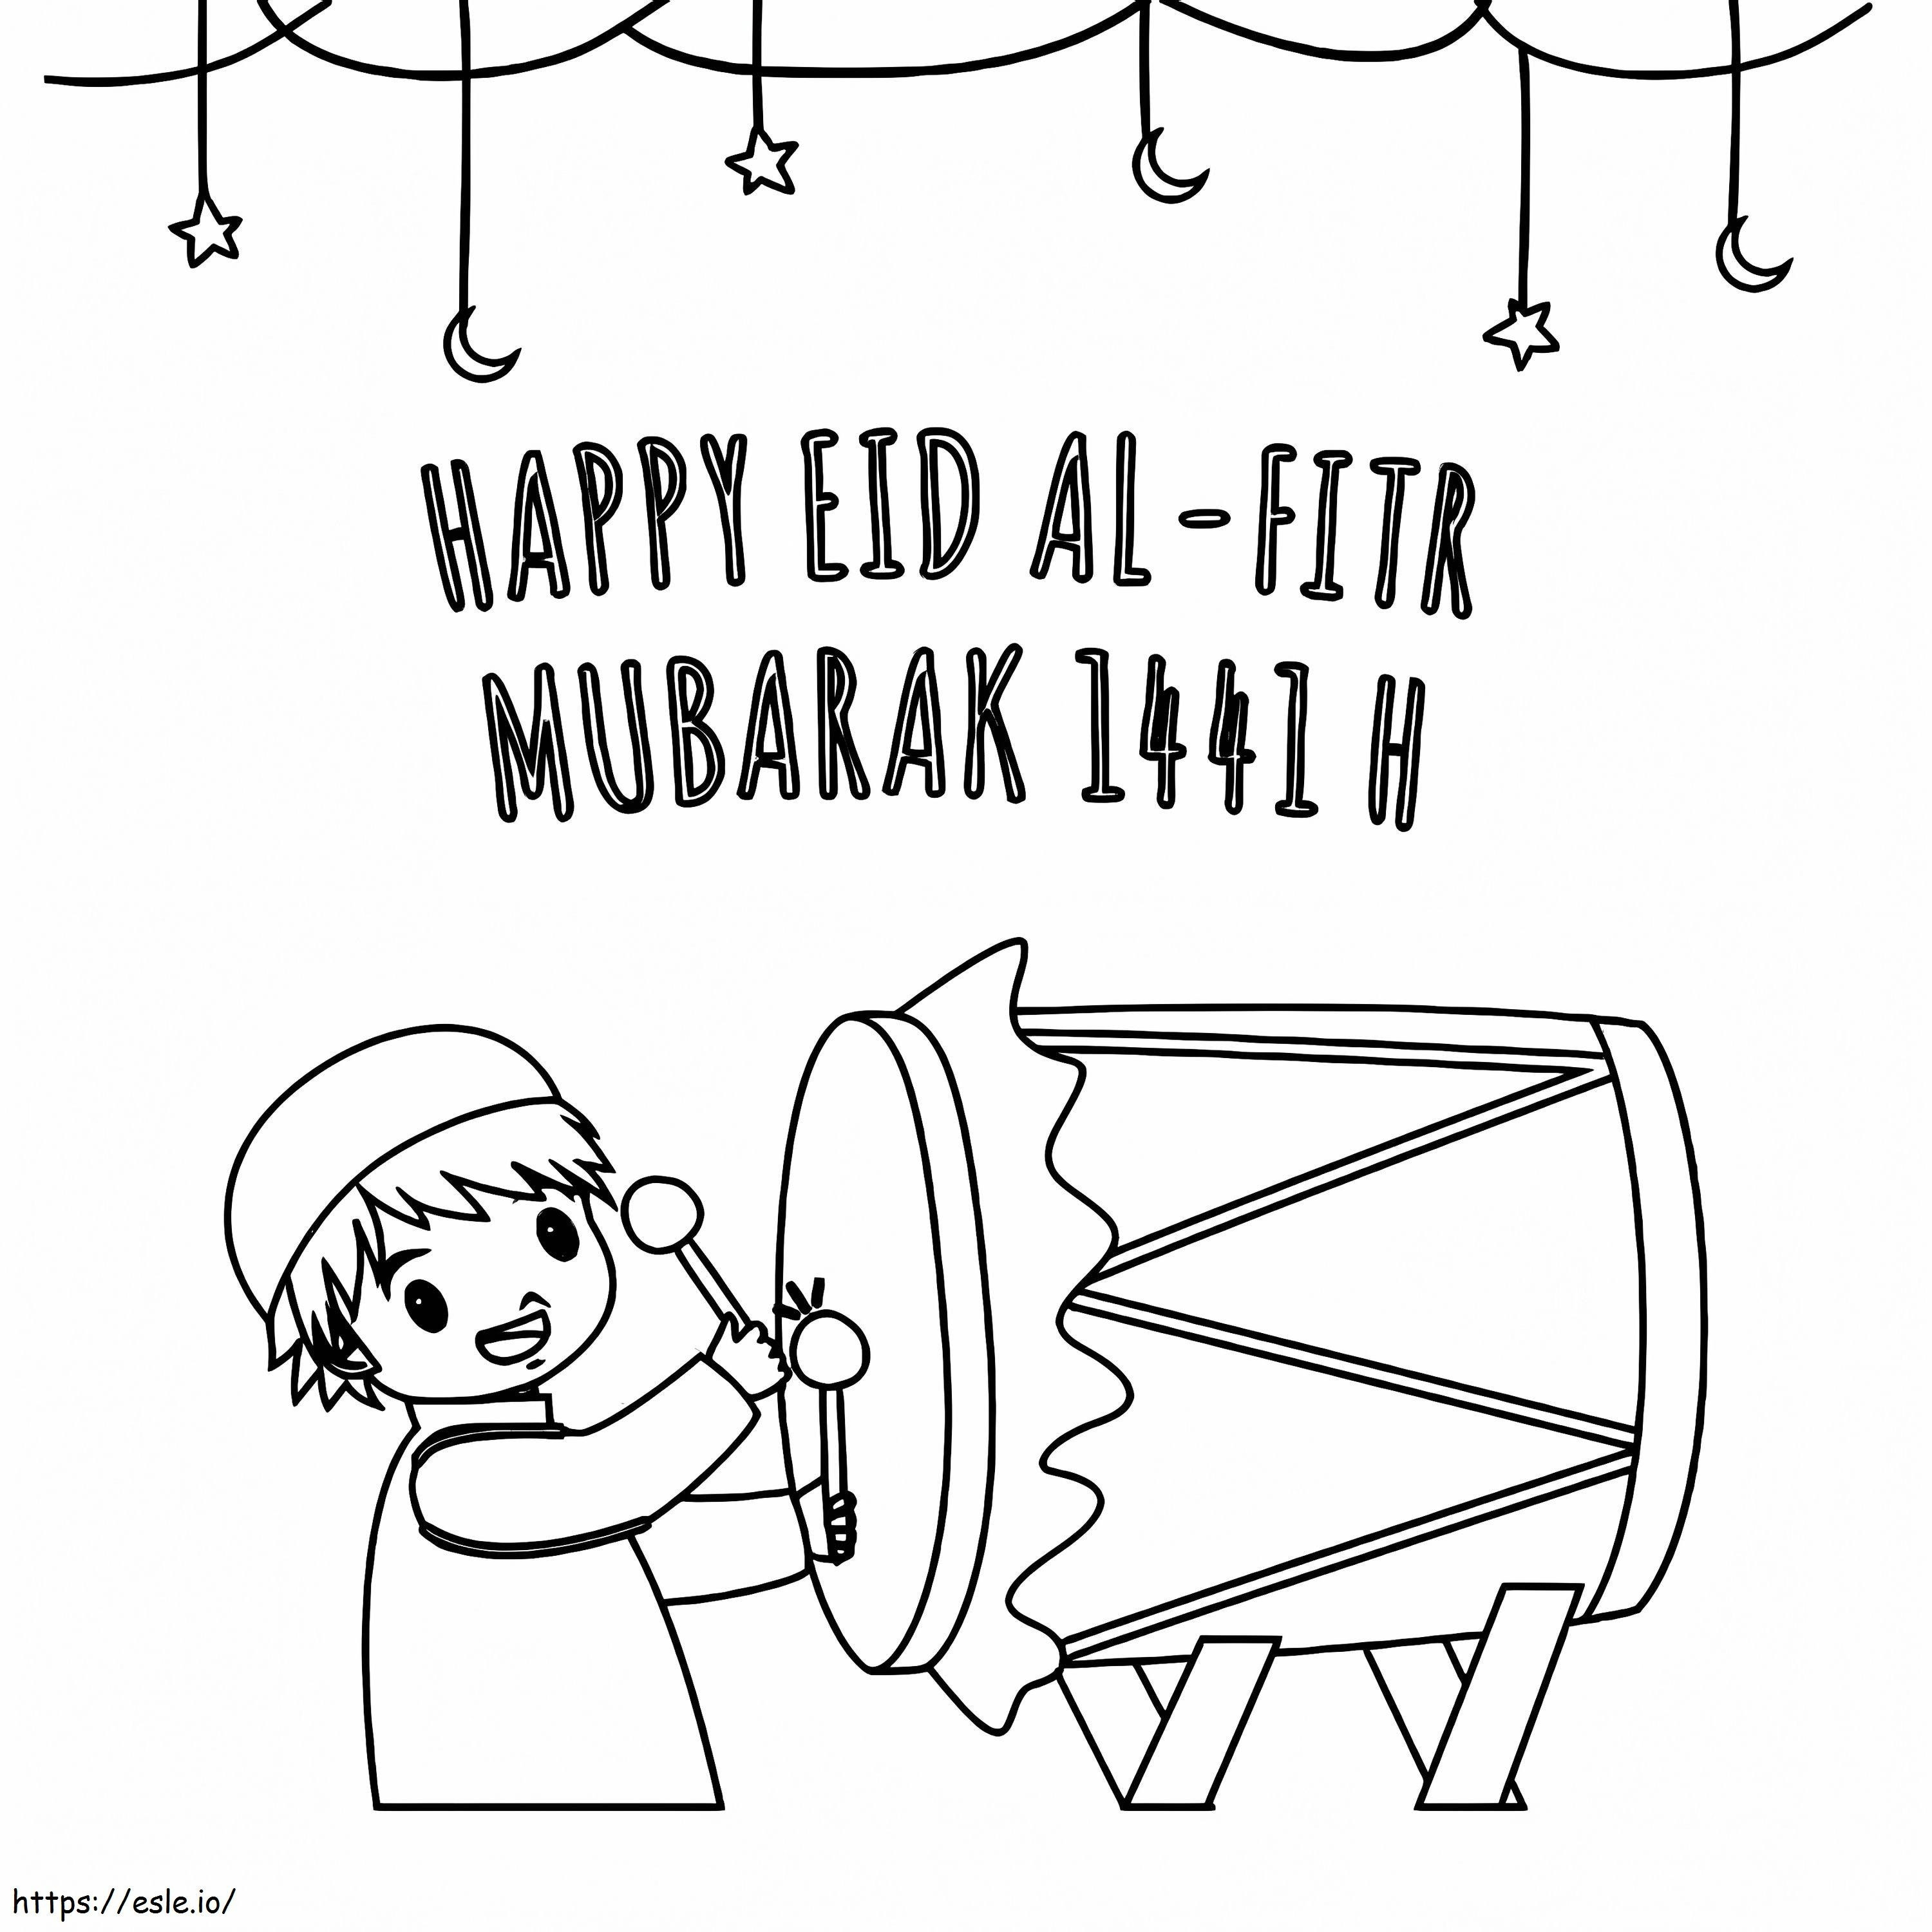 Happy Eid Al-Fitr Mubarak coloring page